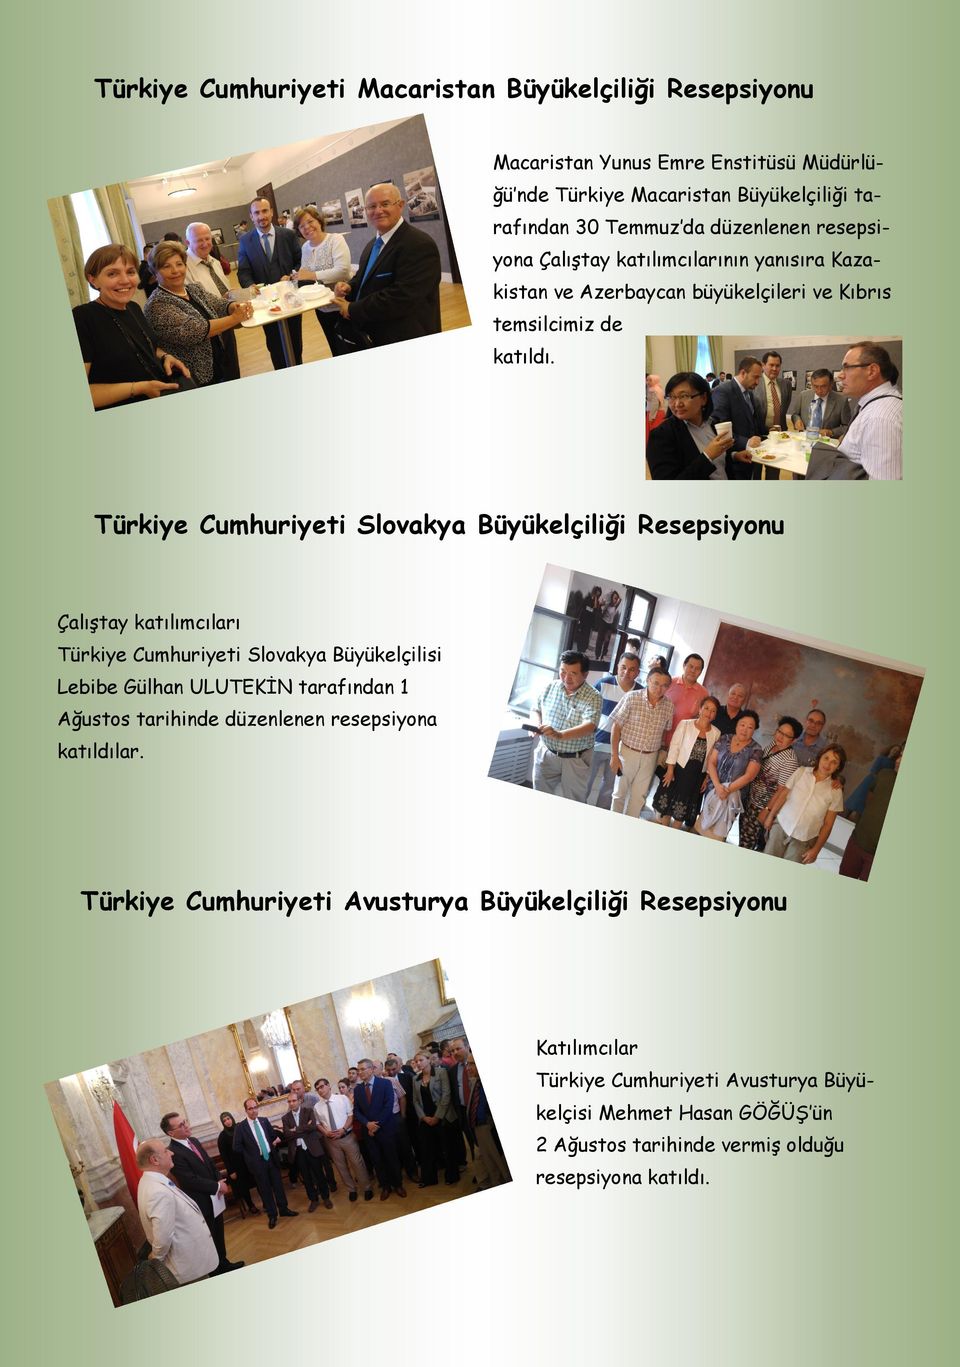 Türkiye Cumhuriyeti Slovakya Büyükelçiliği Resepsiyonu Çalıştay katılımcıları Türkiye Cumhuriyeti Slovakya Büyükelçilisi Lebibe Gülhan ULUTEKİN tarafından 1 Ağustos